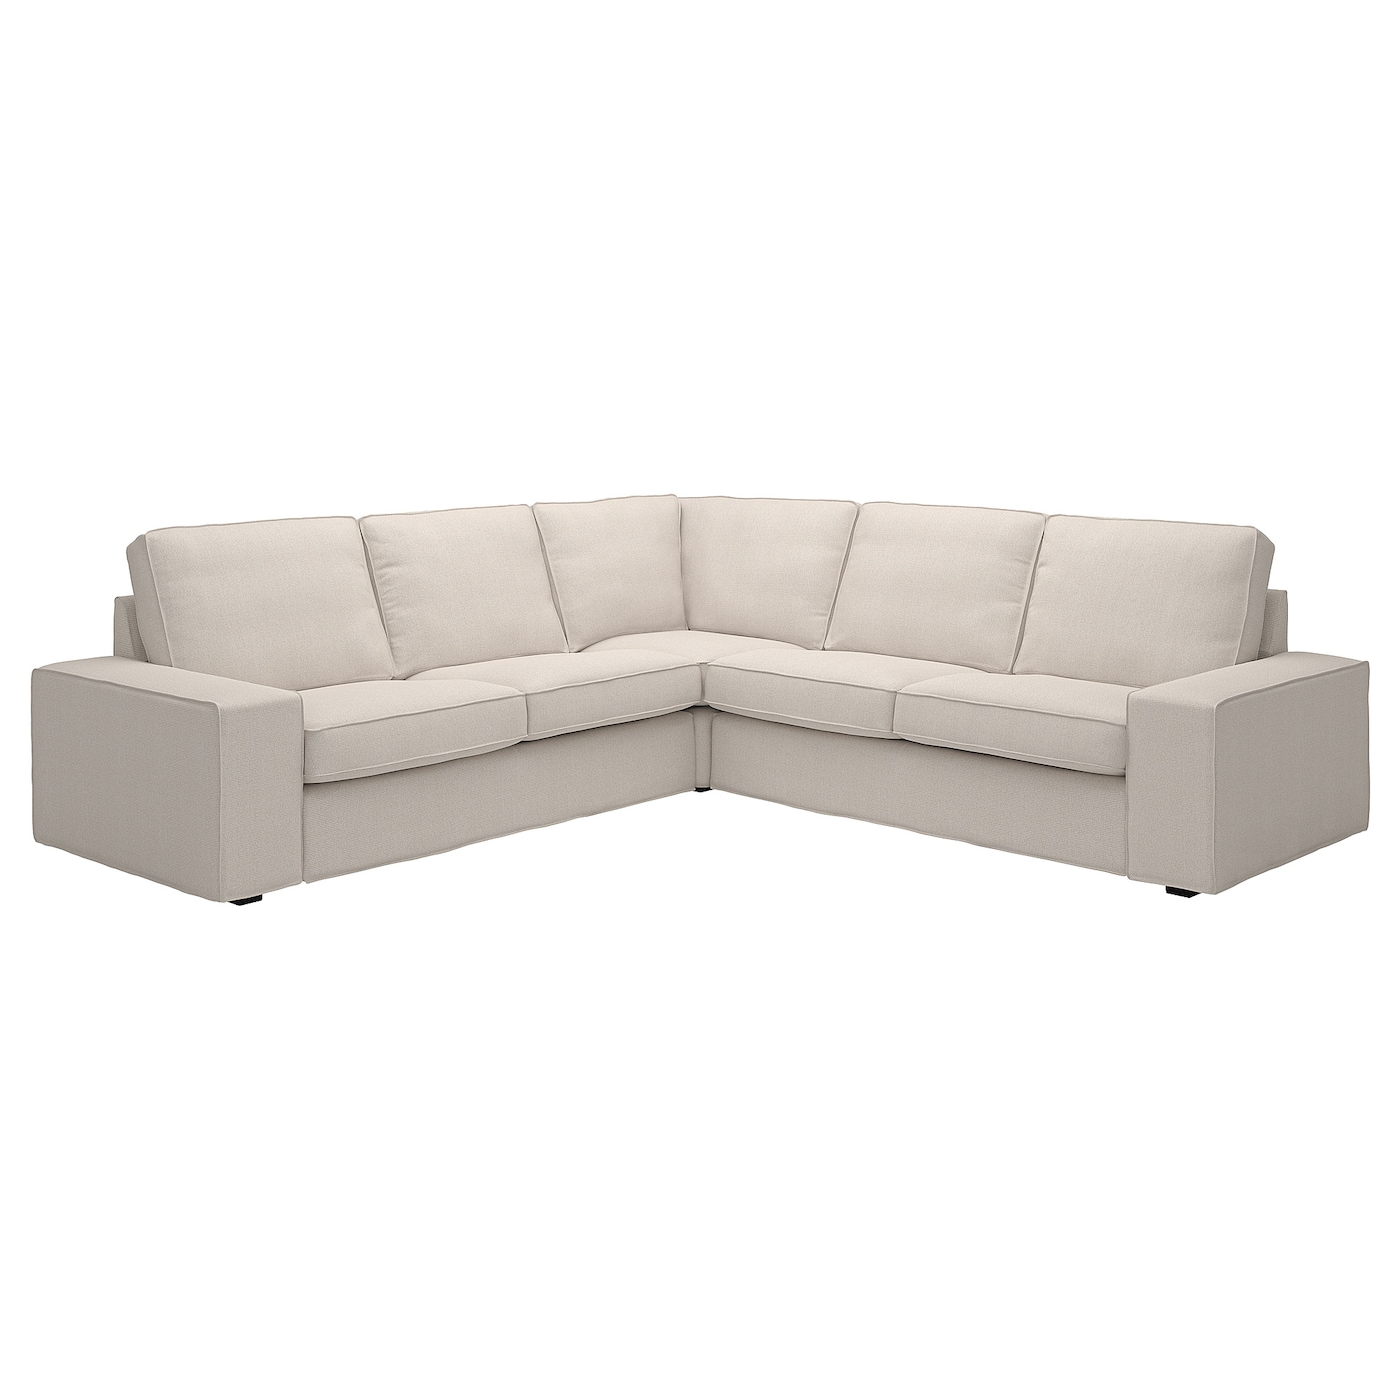 4-местный угловой диван - IKEA KIVIK, 83x95см, бежевый, КИВИК  ИКЕА